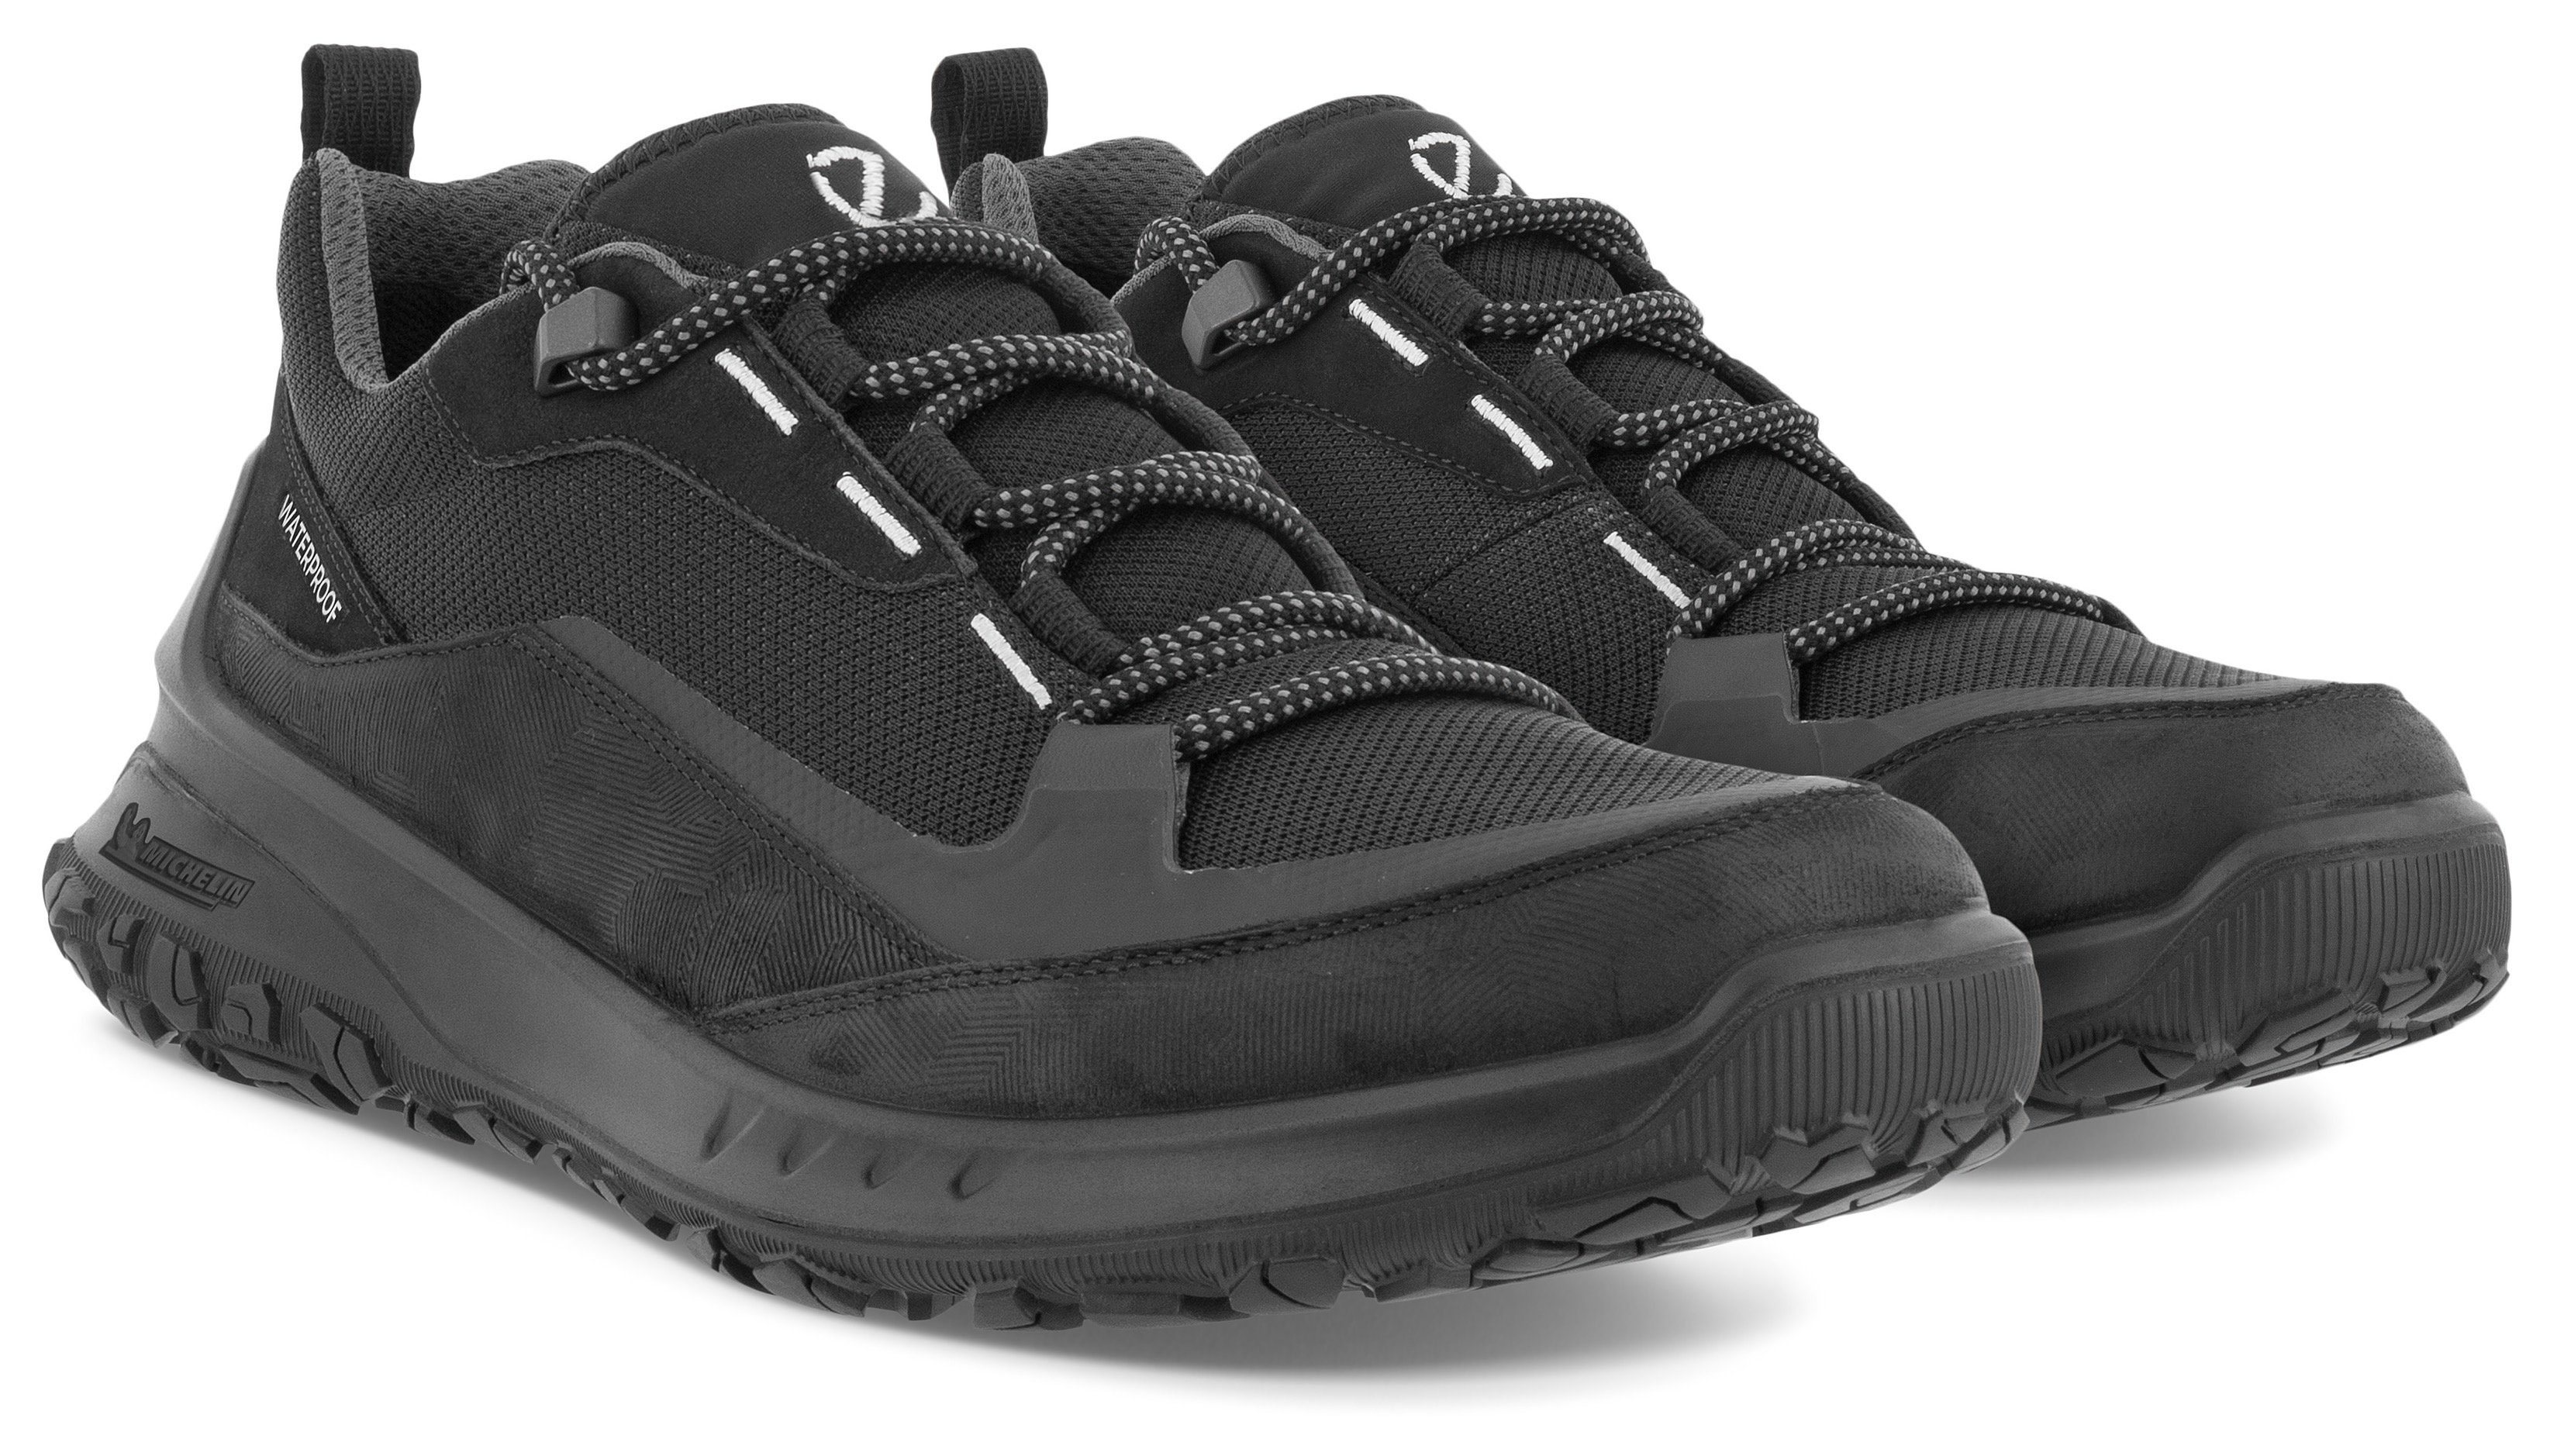 mit Ecco ULT-TRN Laufsohle M schwarz Sneaker sportive Michelin-Technologie